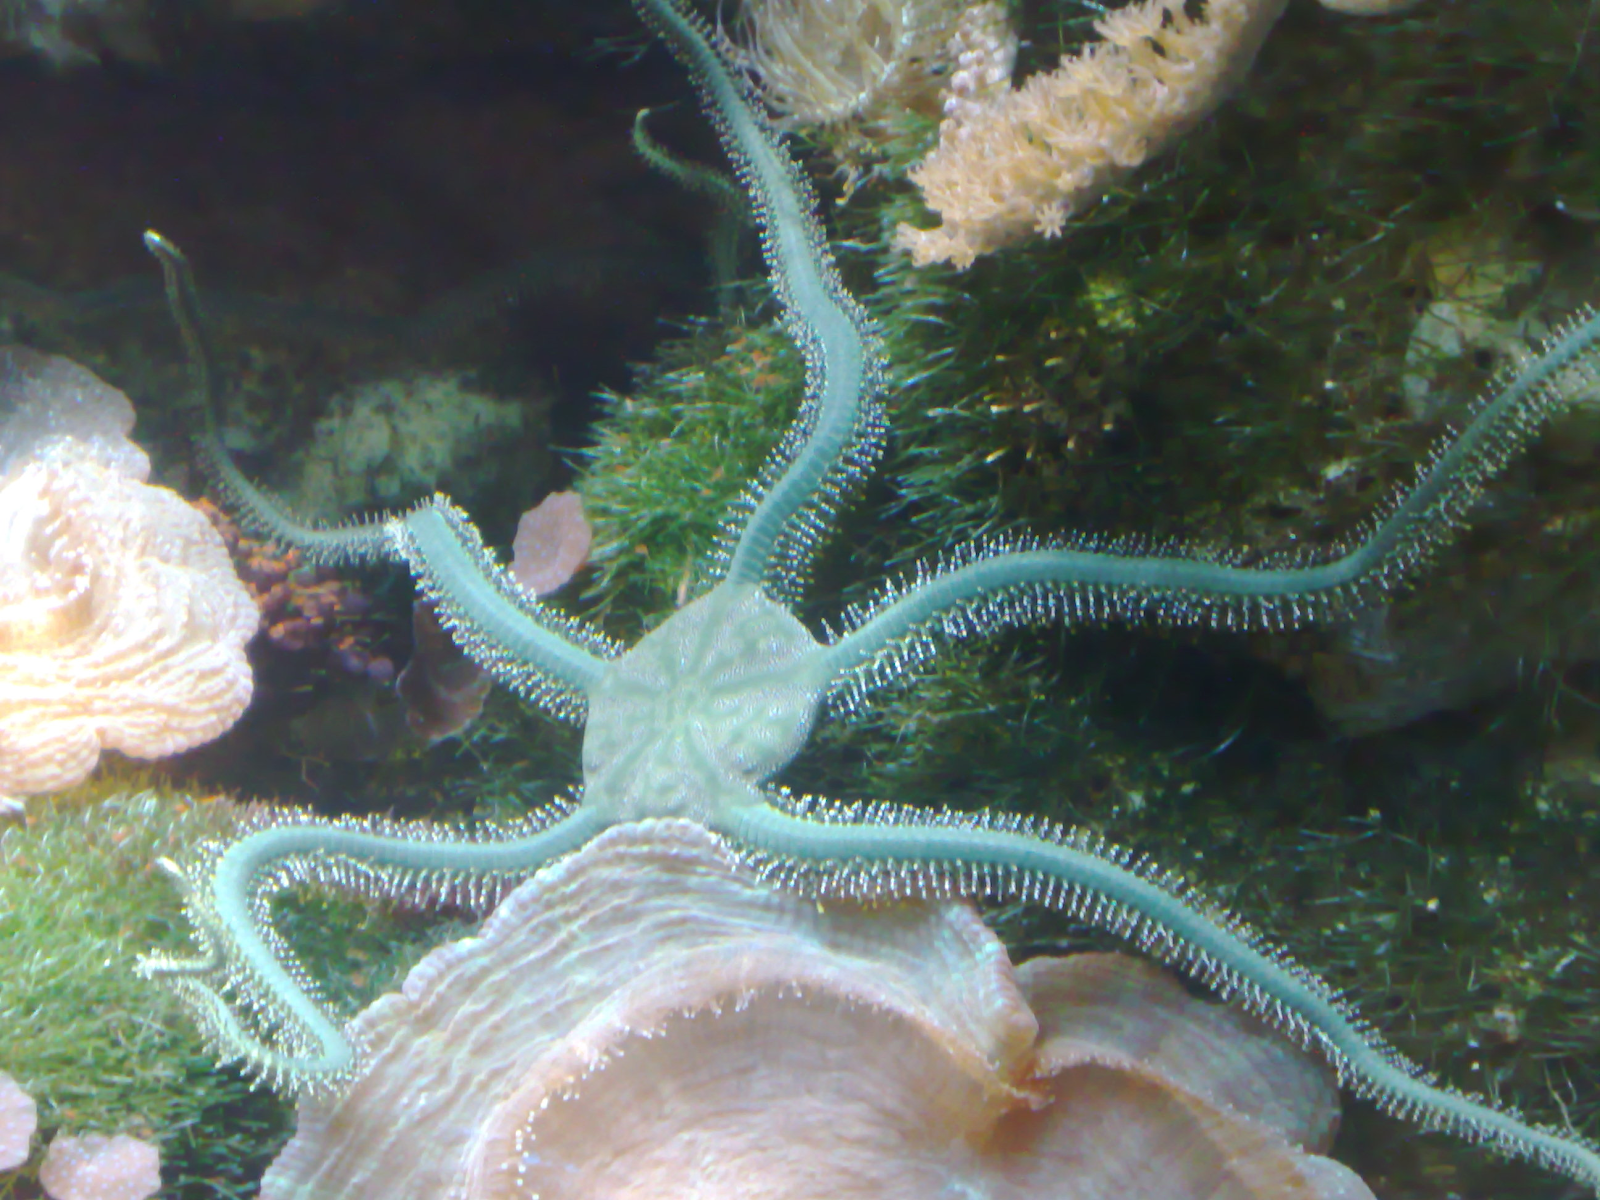 Animal marinho com tentáculos

Descrição gerada automaticamente com confiança média